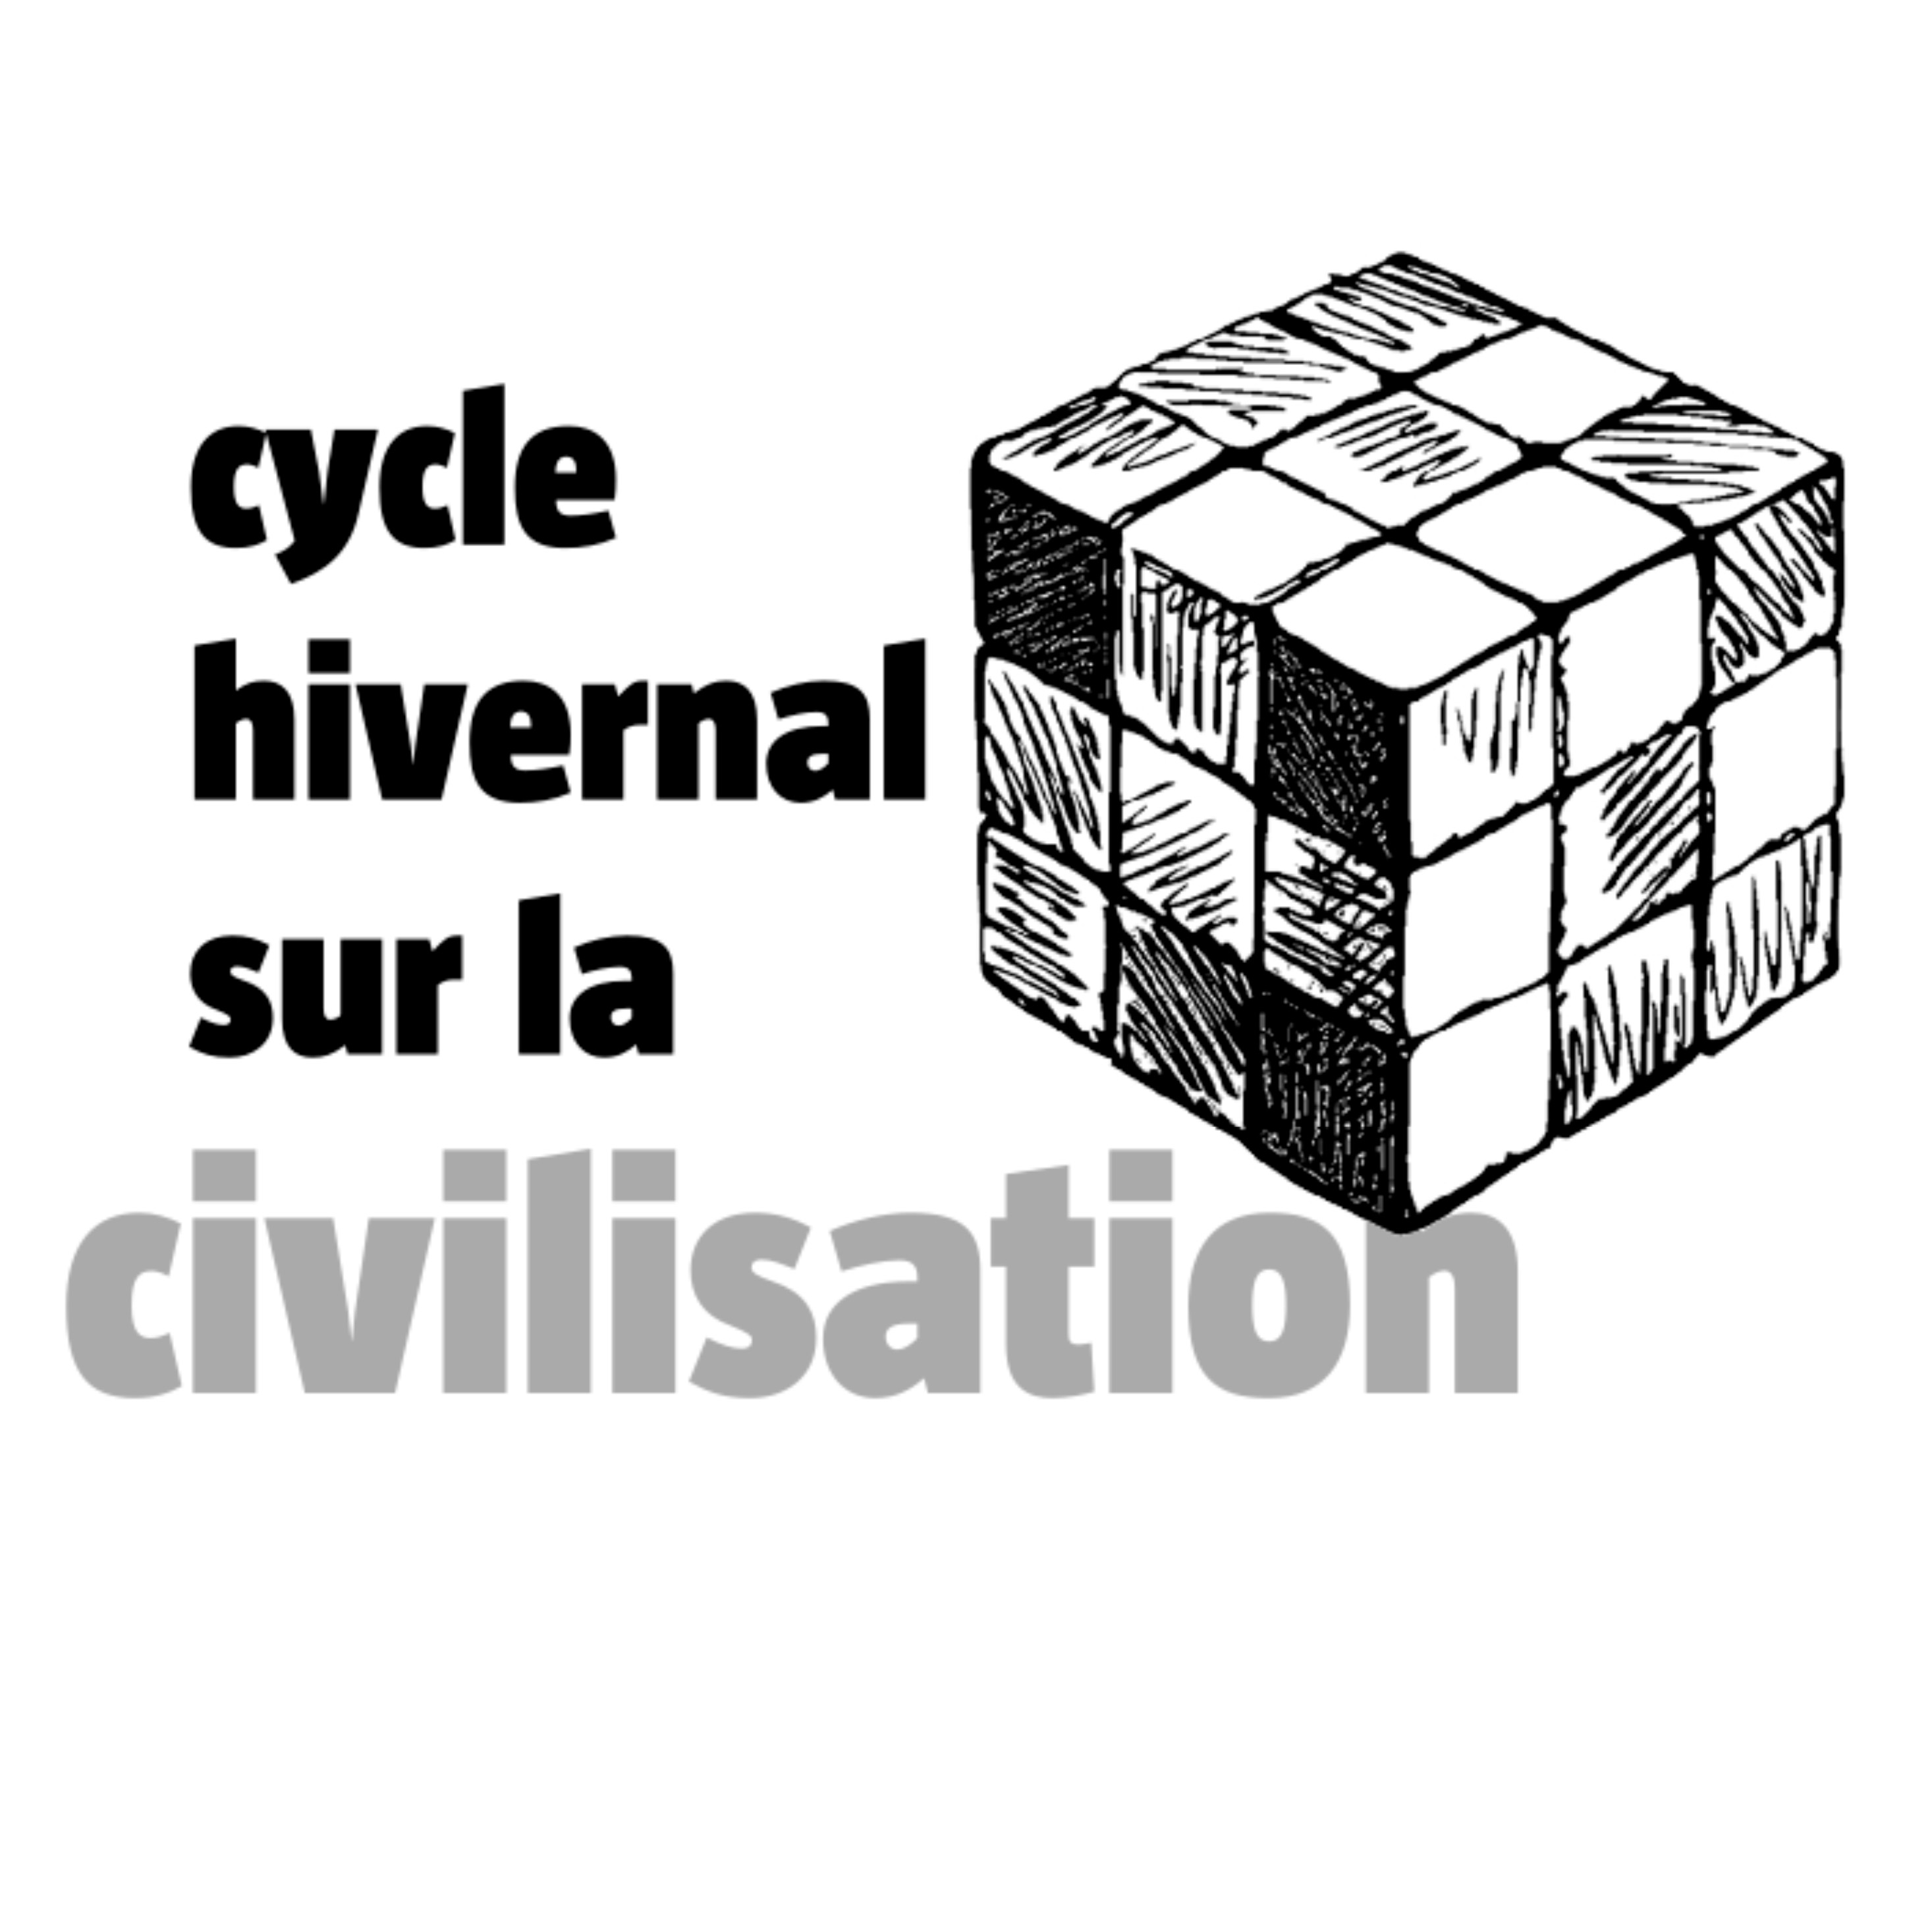 cycle_hivernal_sur_civilisation